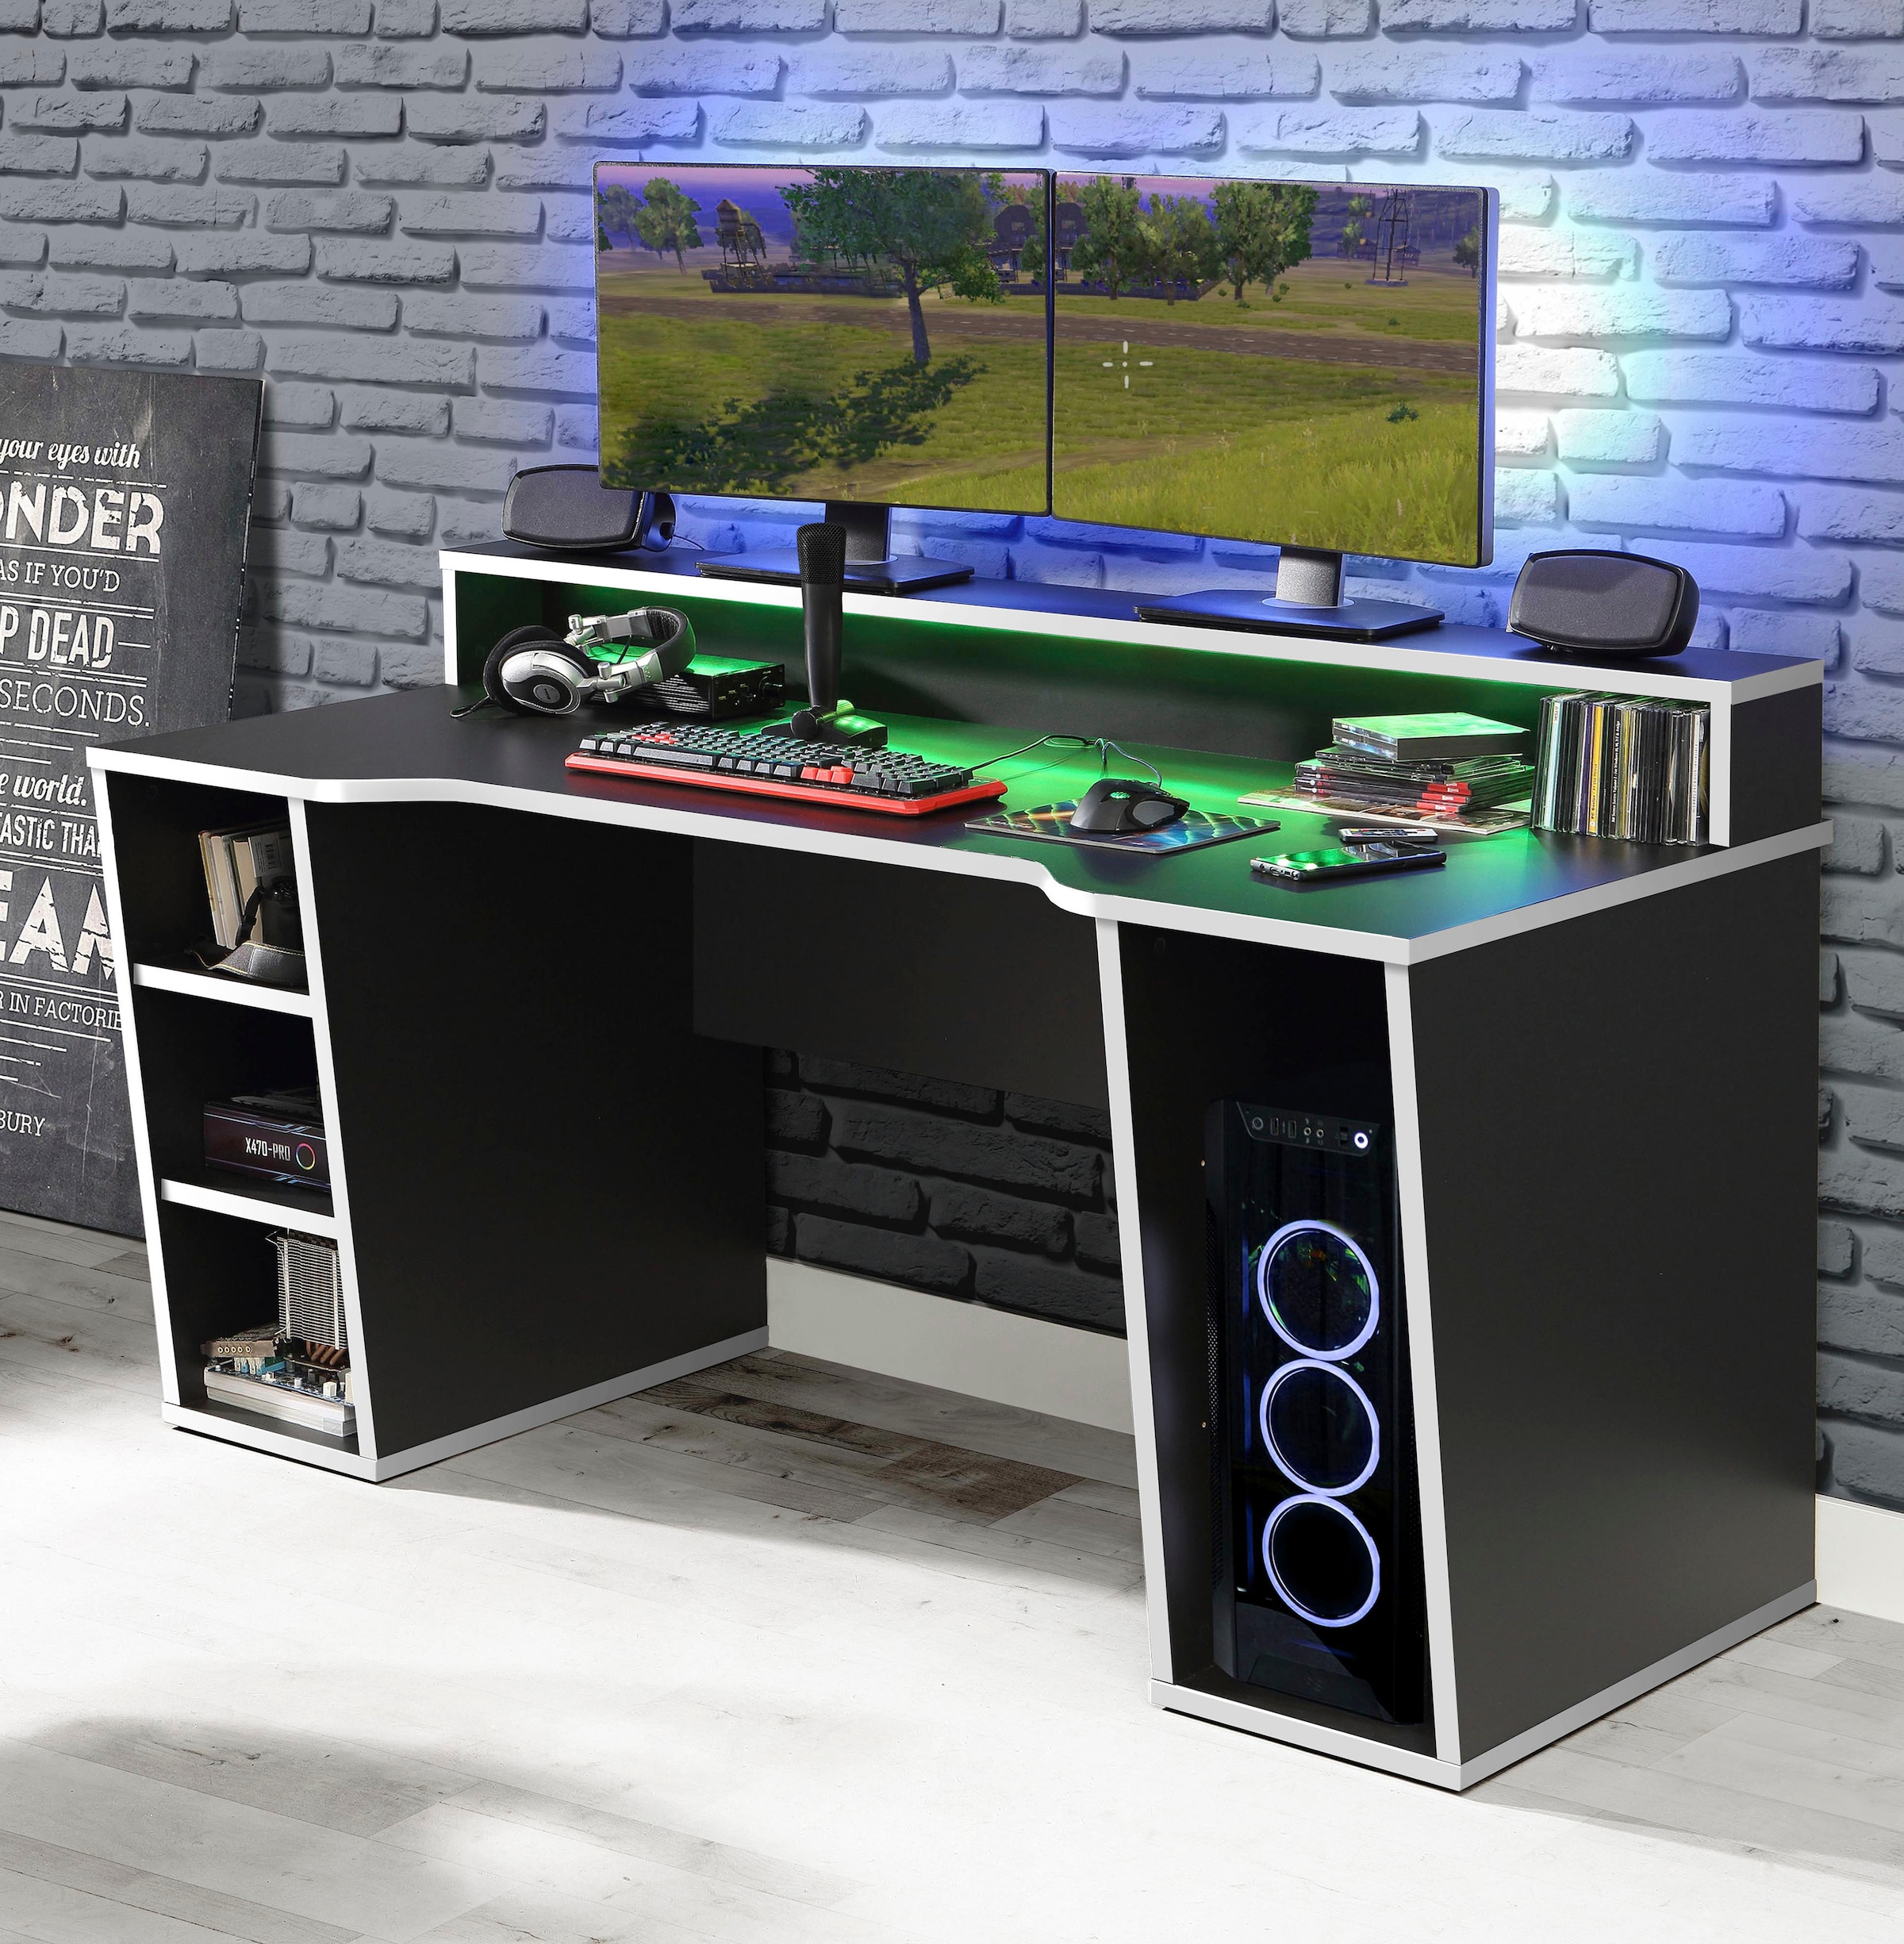 FORTE Gamingtisch »Tezaur«, mit RGB-Beleuchtung, Breite 160 cm